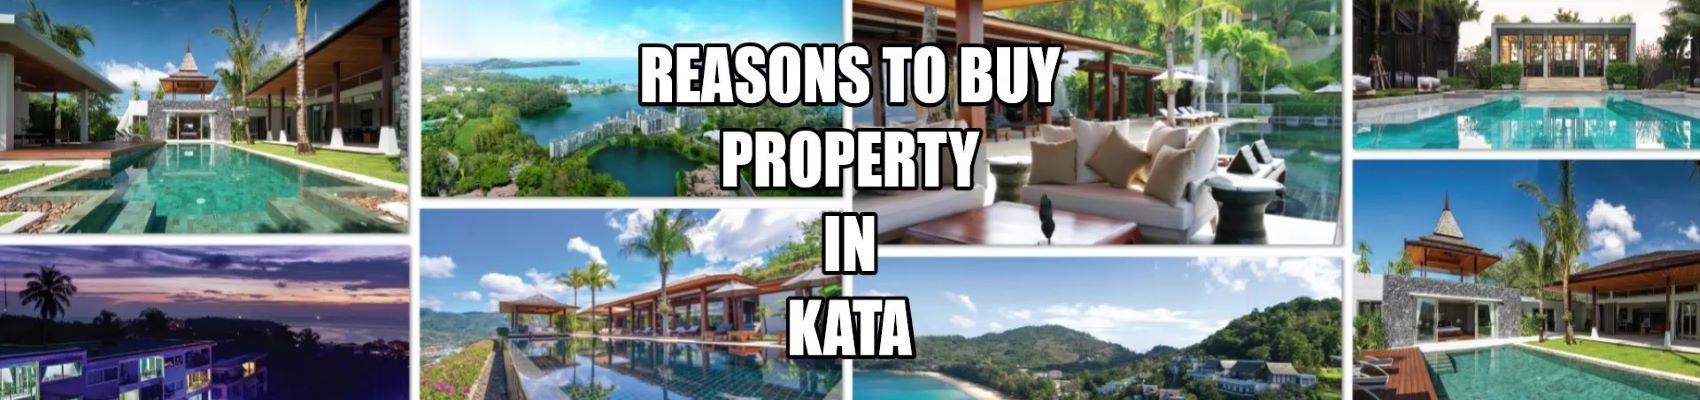 Tipps zum Kauf von Immobilien in Kata